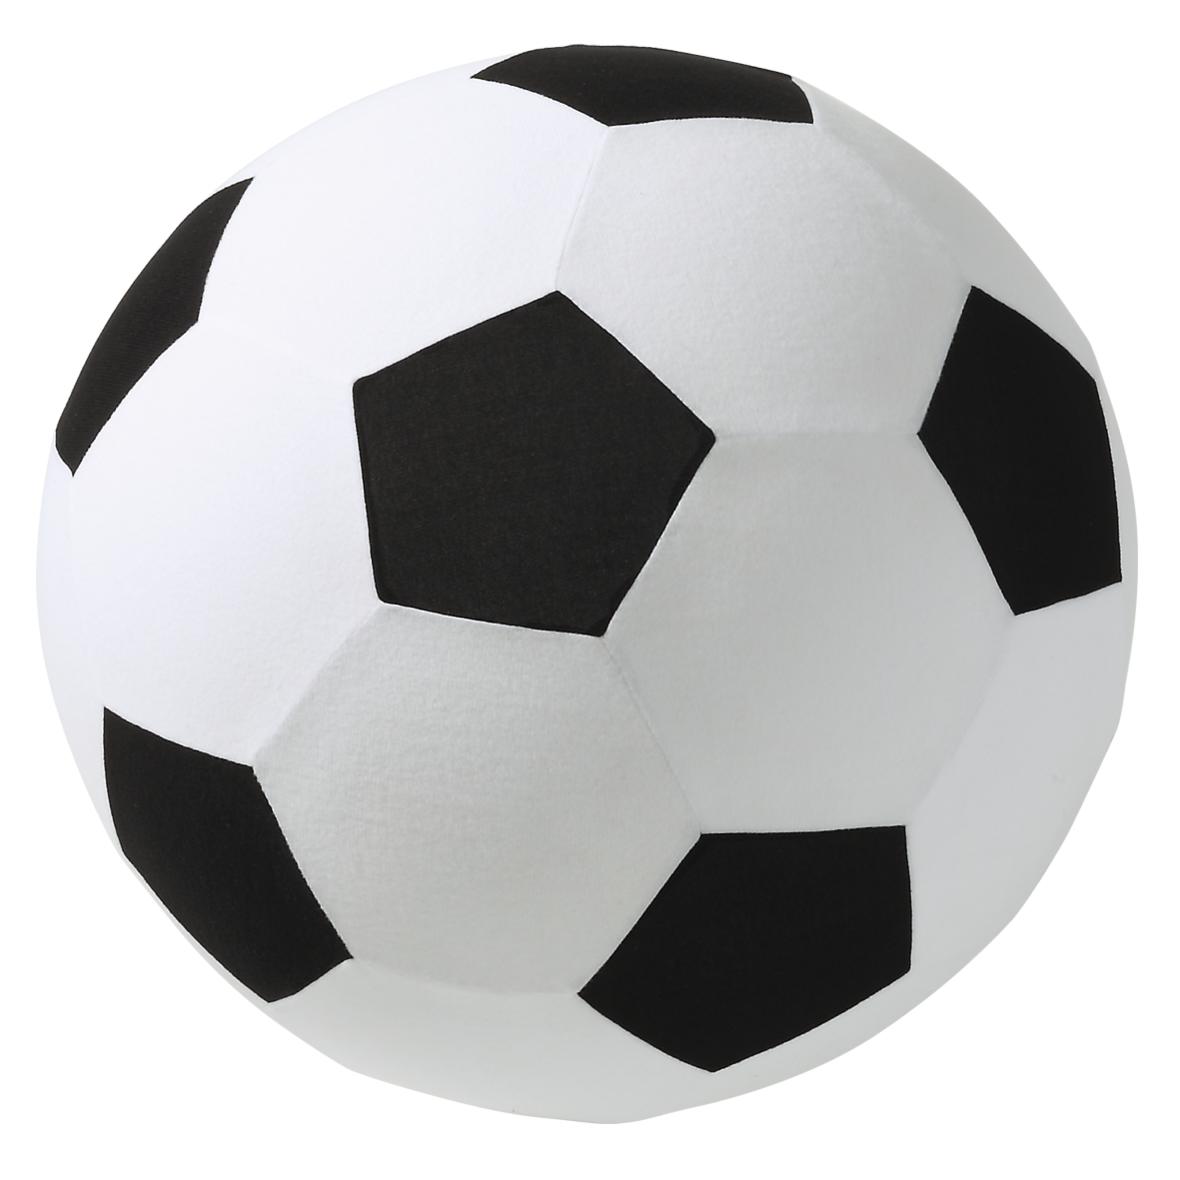 Pallone da calcio gigante gonfiabile con superficie in morbido pile - Piuro